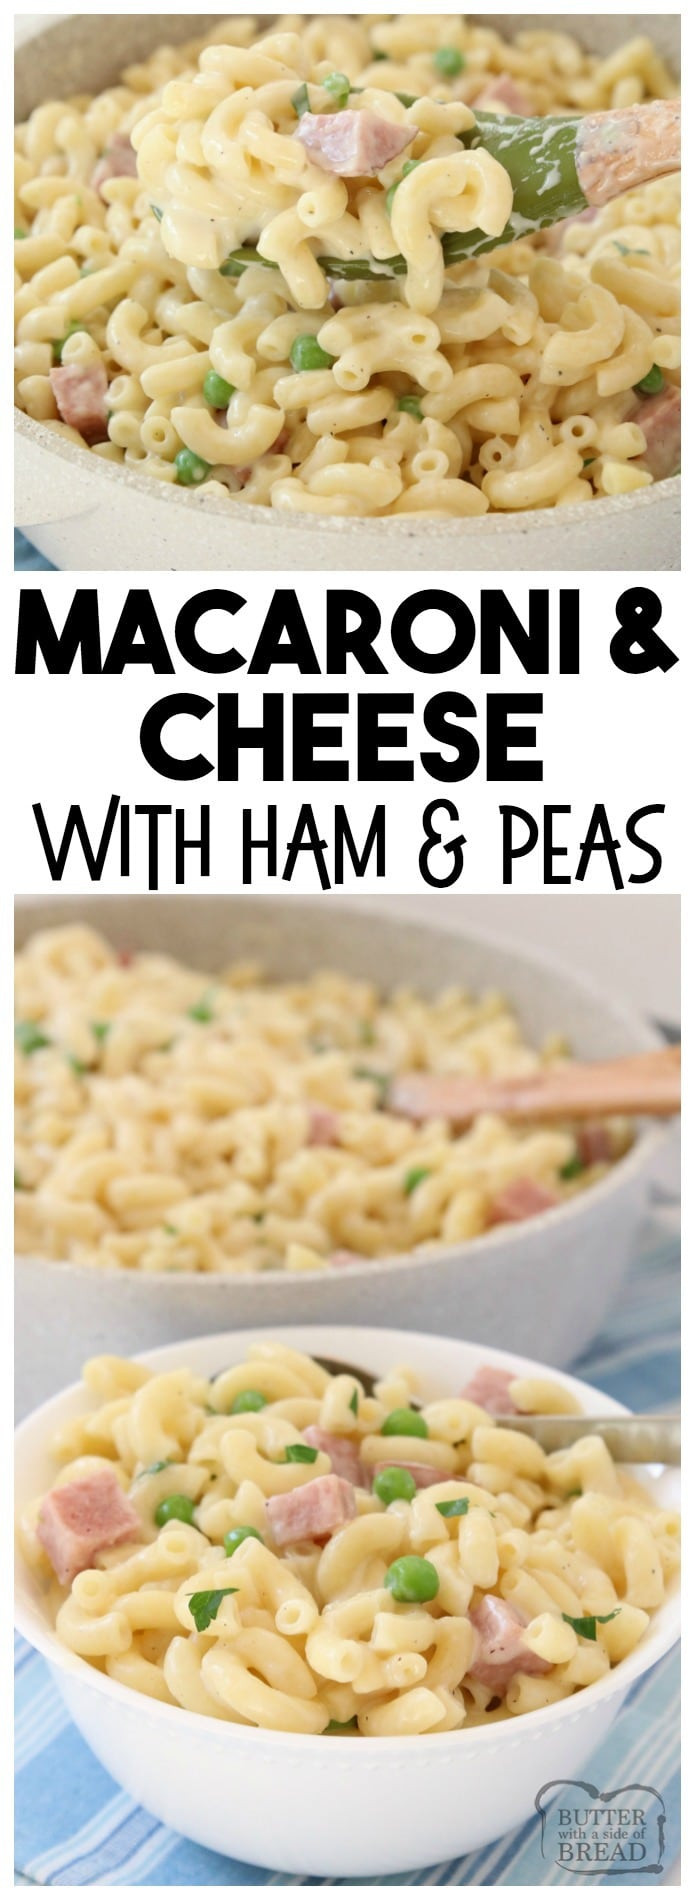 Macaroni Salad With Cheese And Peas
 MACARONI AND CHEESE with HAM and PEAS Butter with a Side